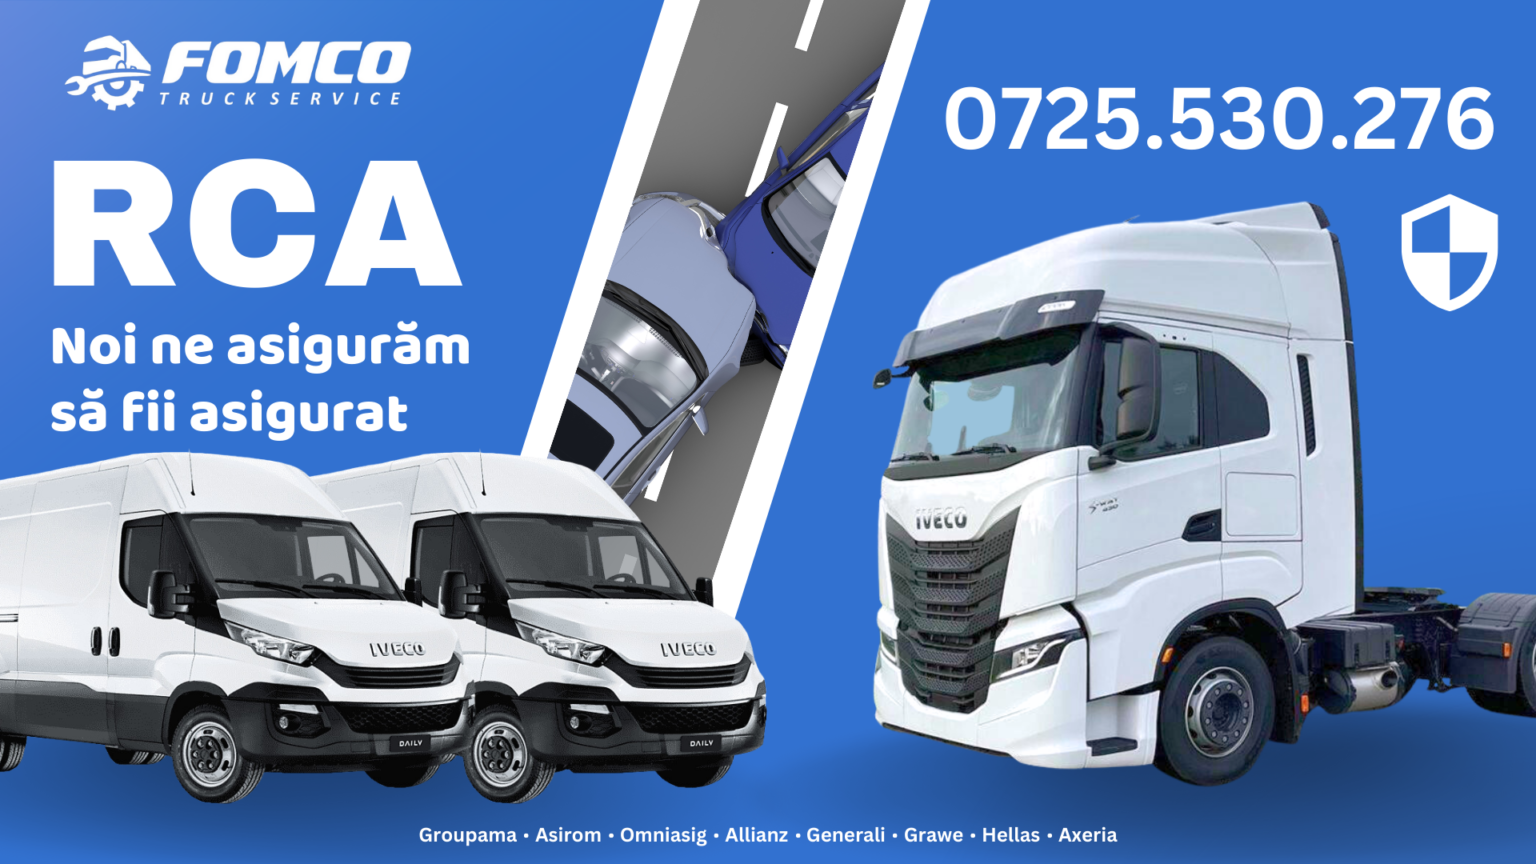 RCA Fomco Truck Service